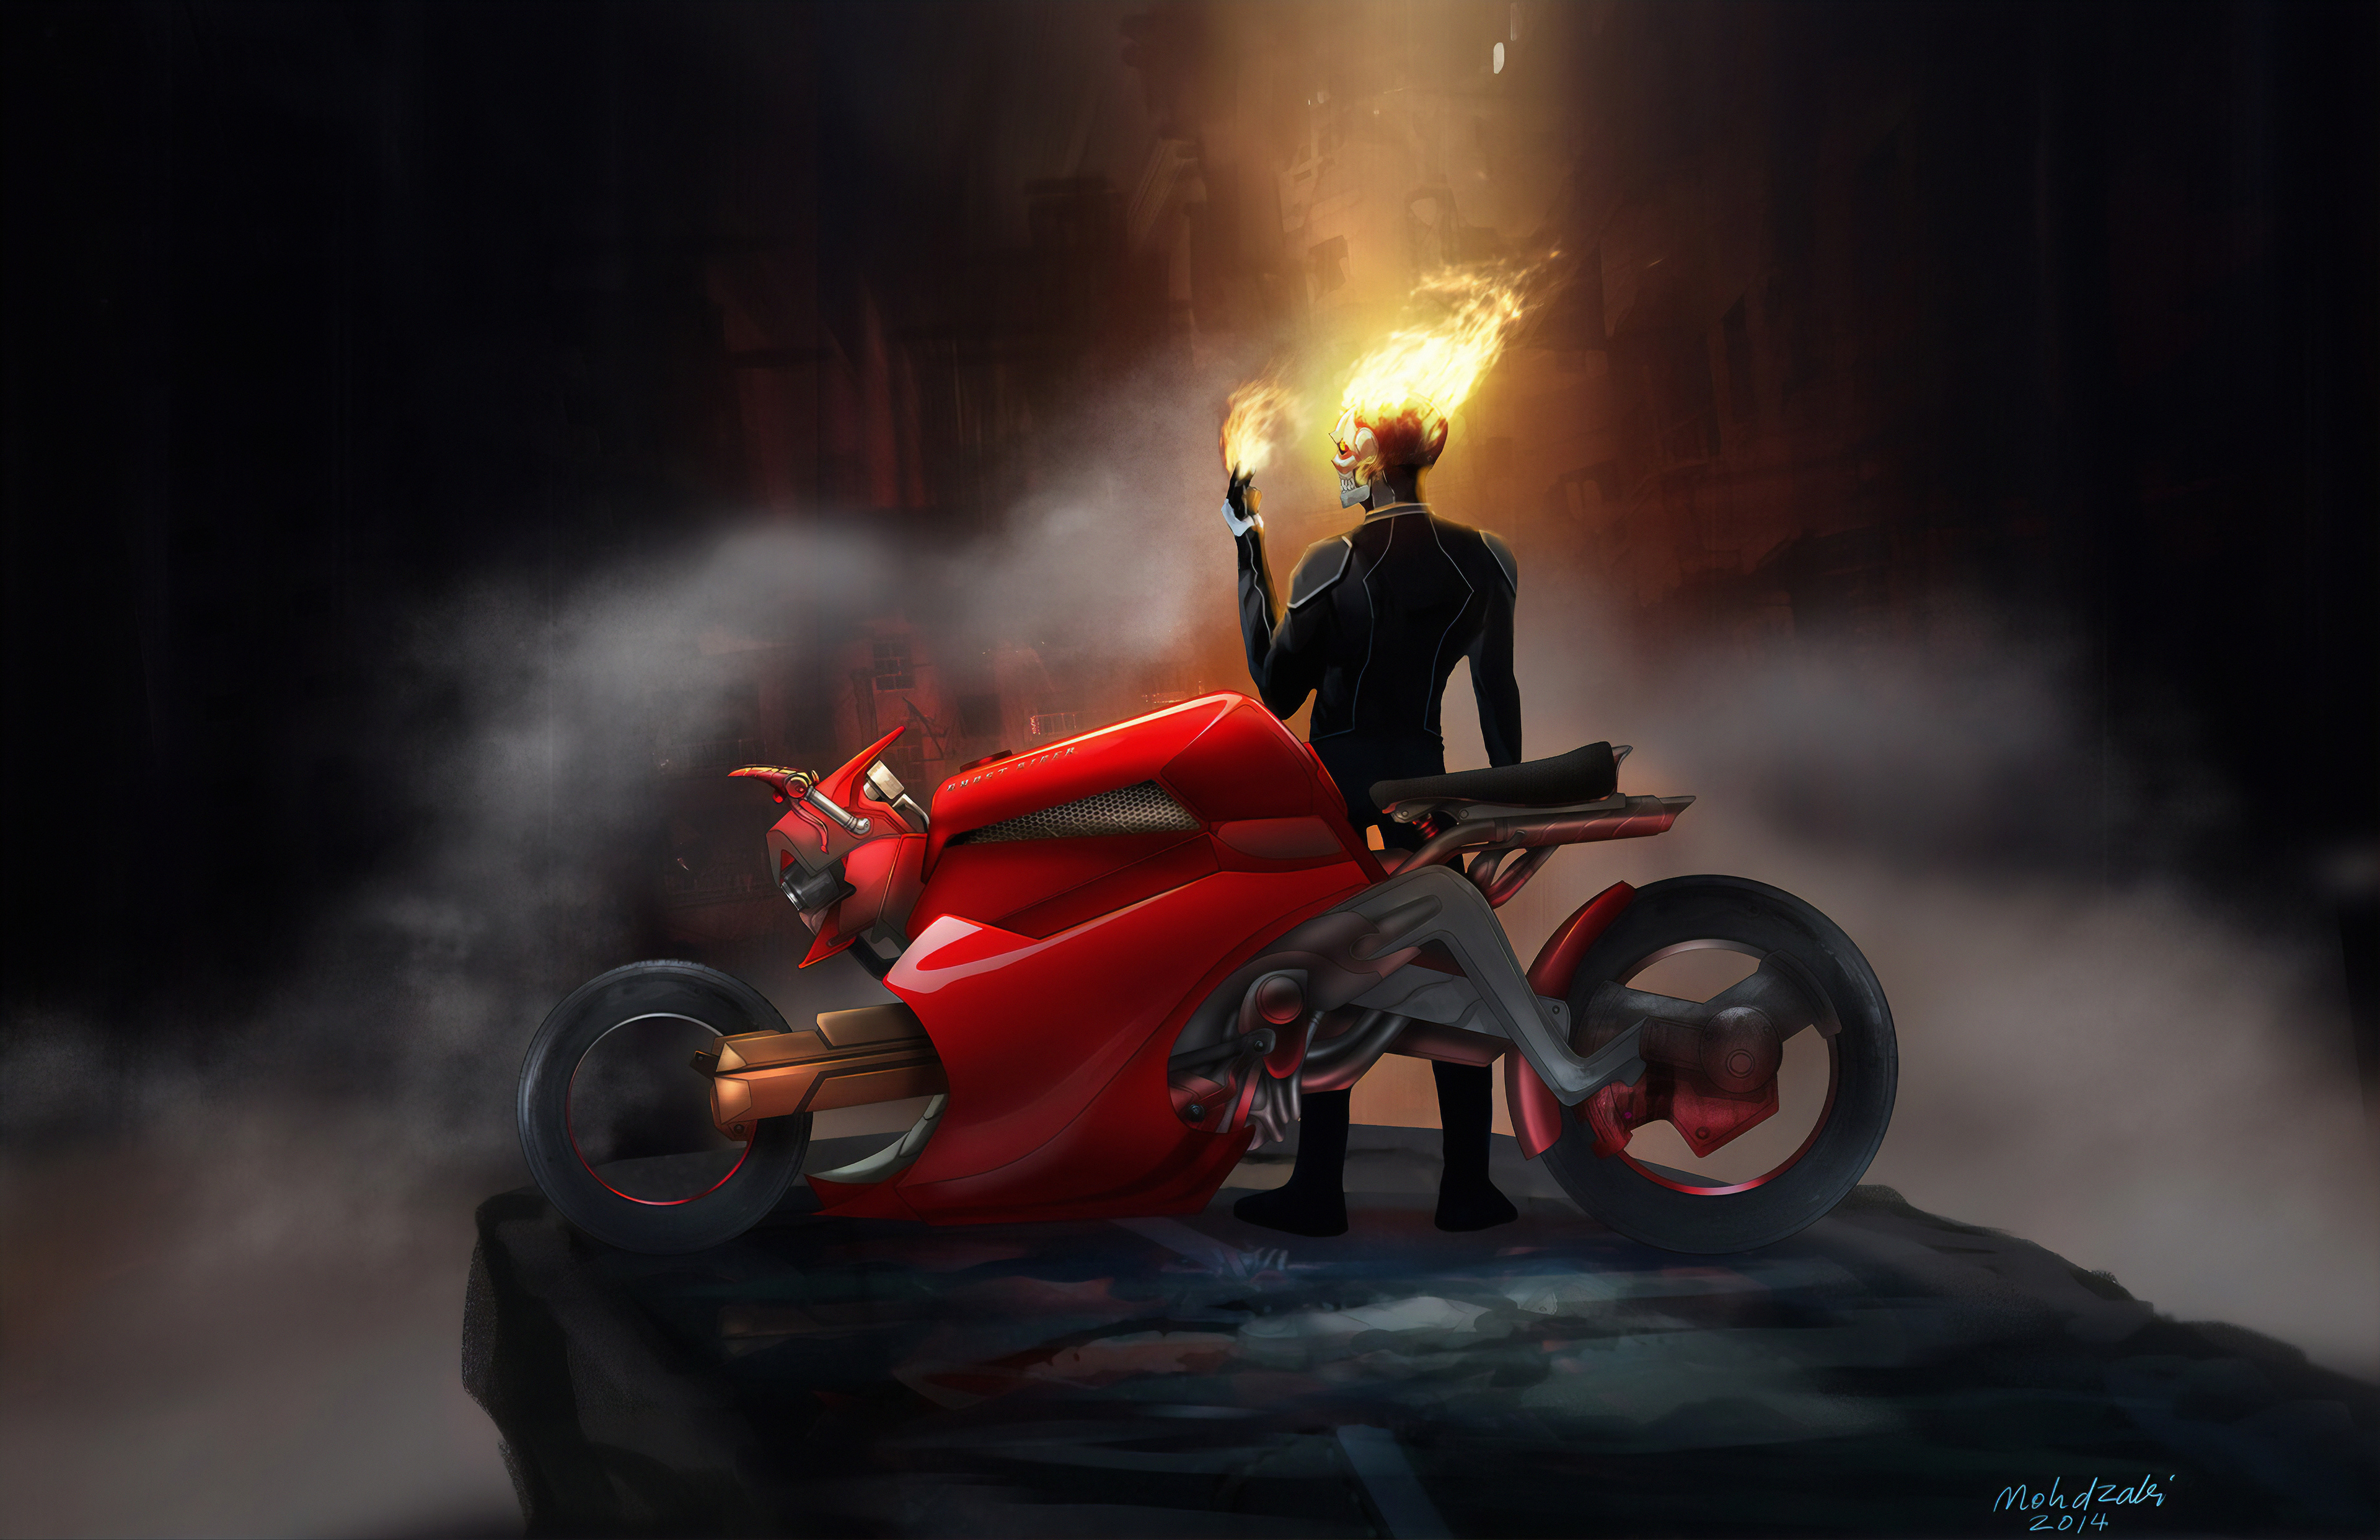 Descarga gratuita de fondo de pantalla para móvil de Motocicleta, Vehículo, Historietas, Ghost Rider: El Motorista Fantasma.